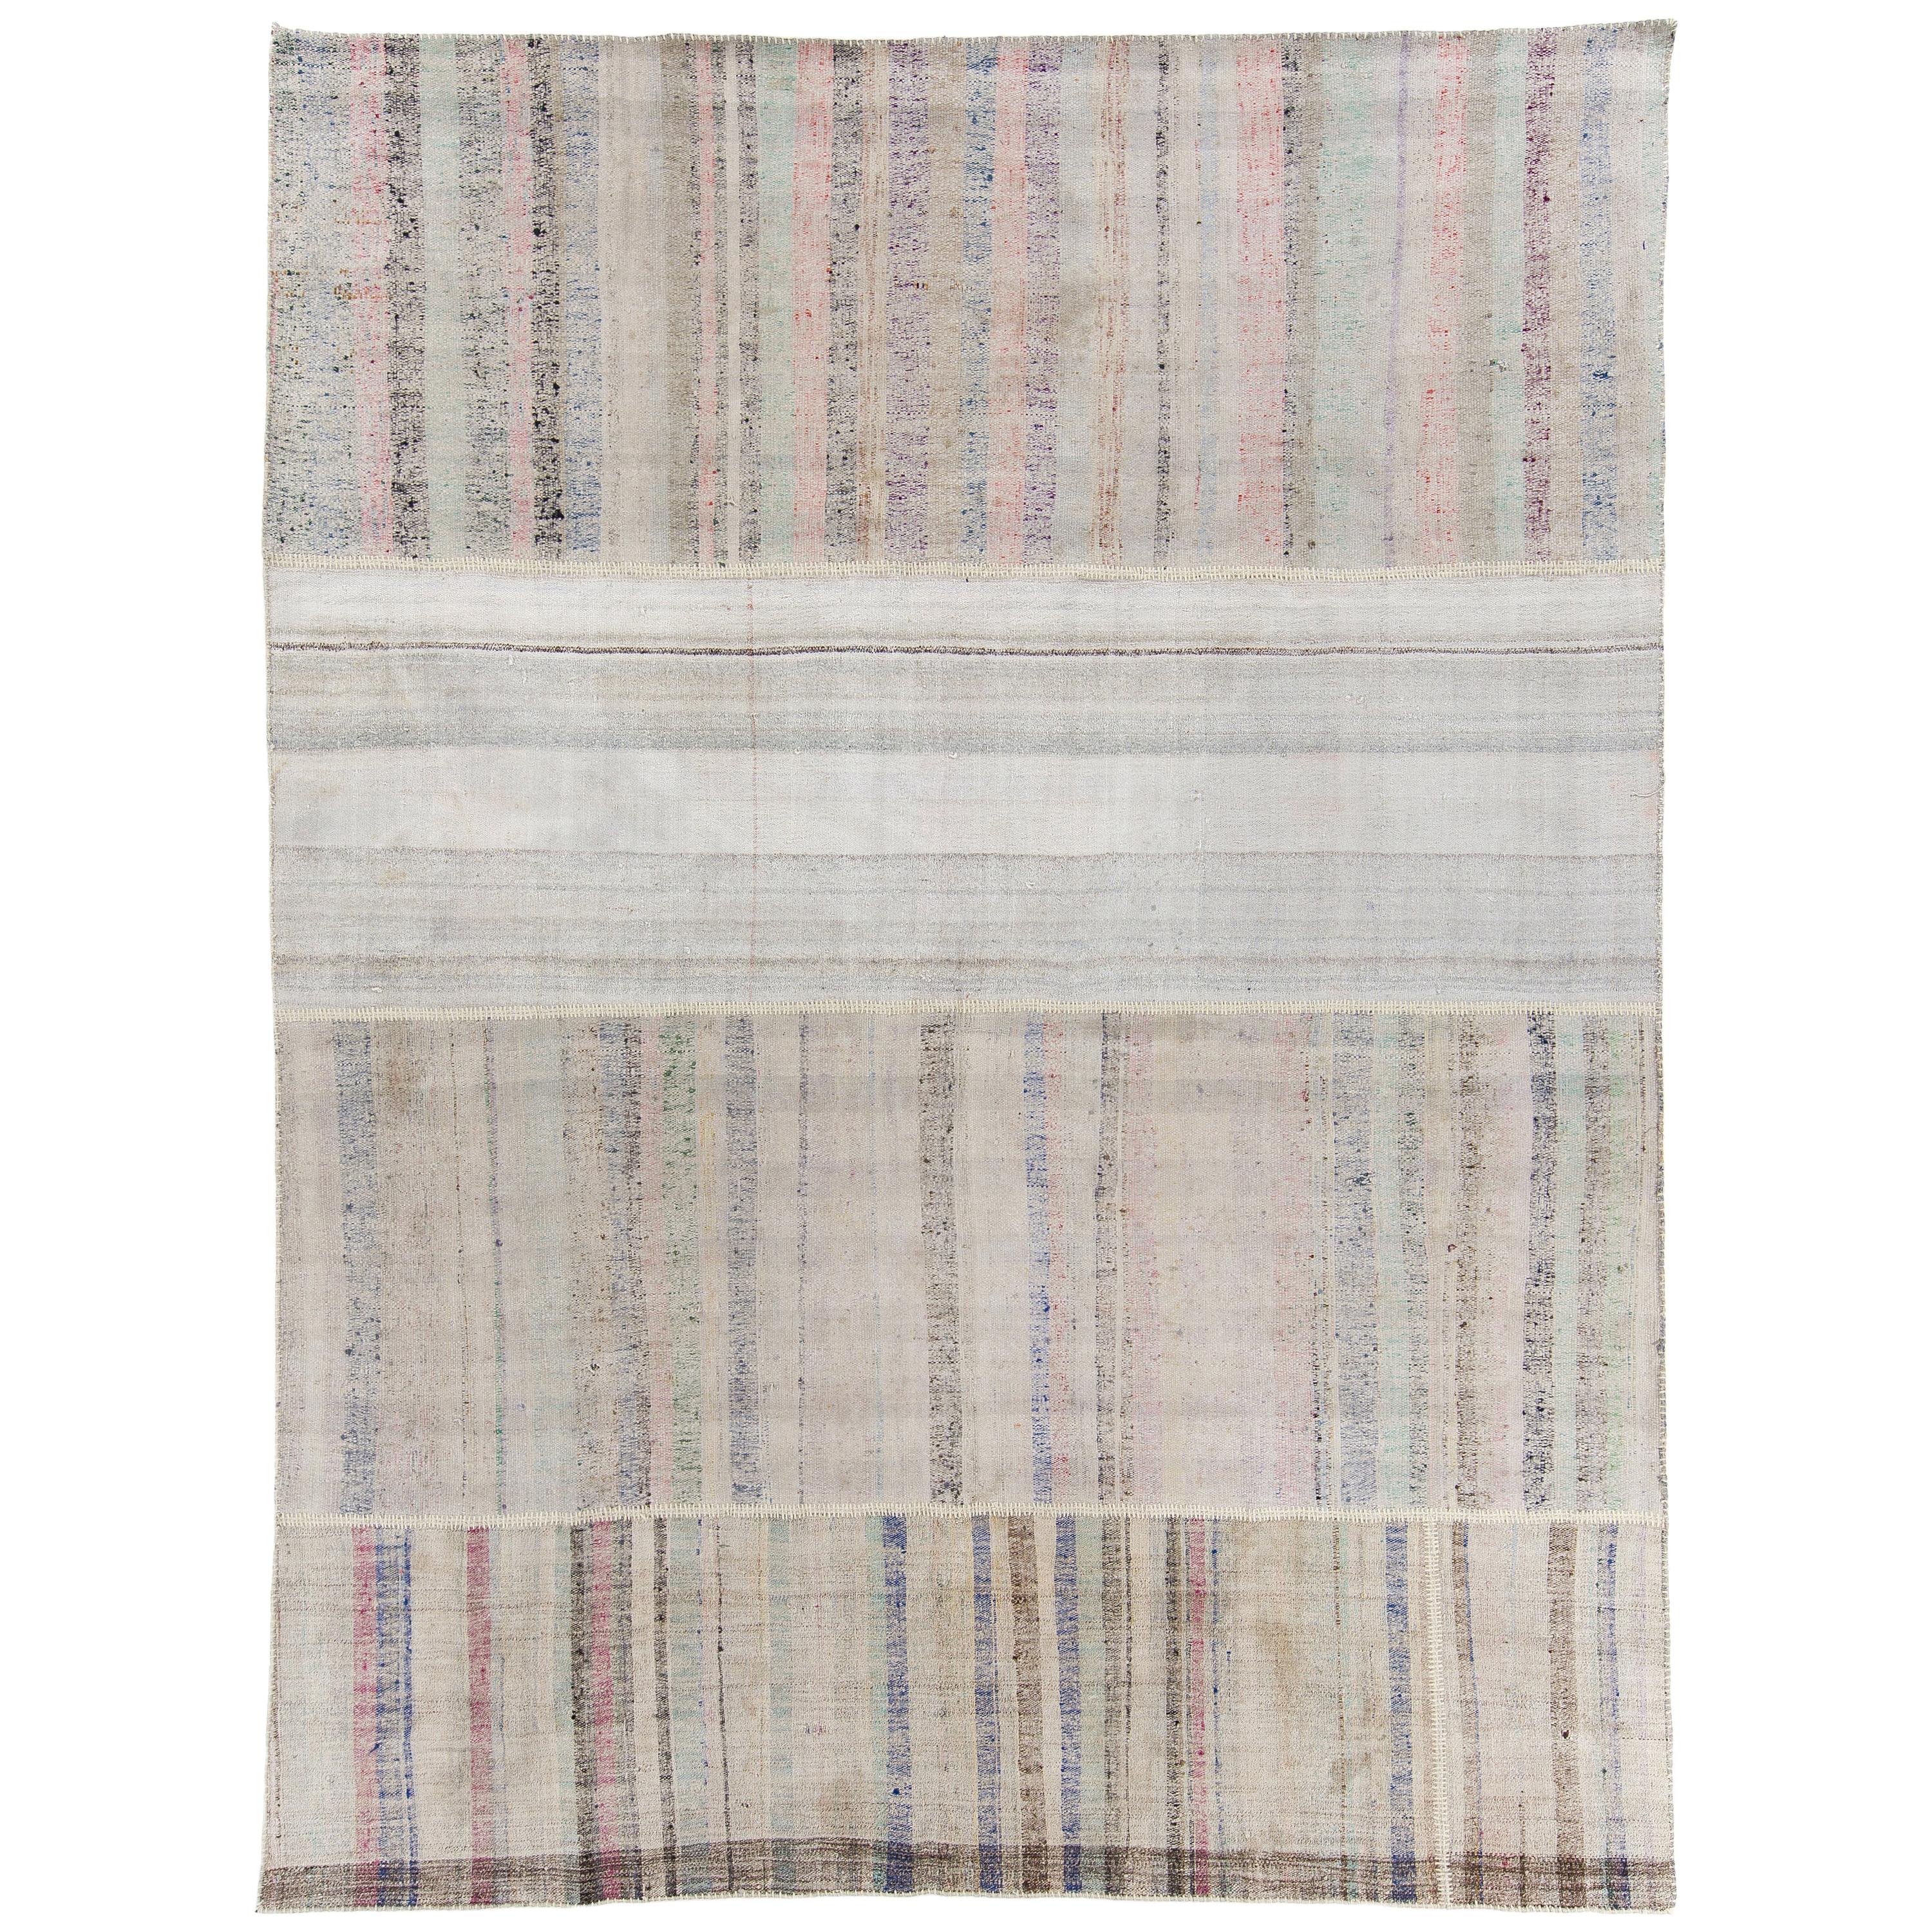 9.2x12.2 Ft Vintage Cotton Rag Rug with Colorful Stripes, Flat Weave Kilim (tapis en coton à rayures colorées)